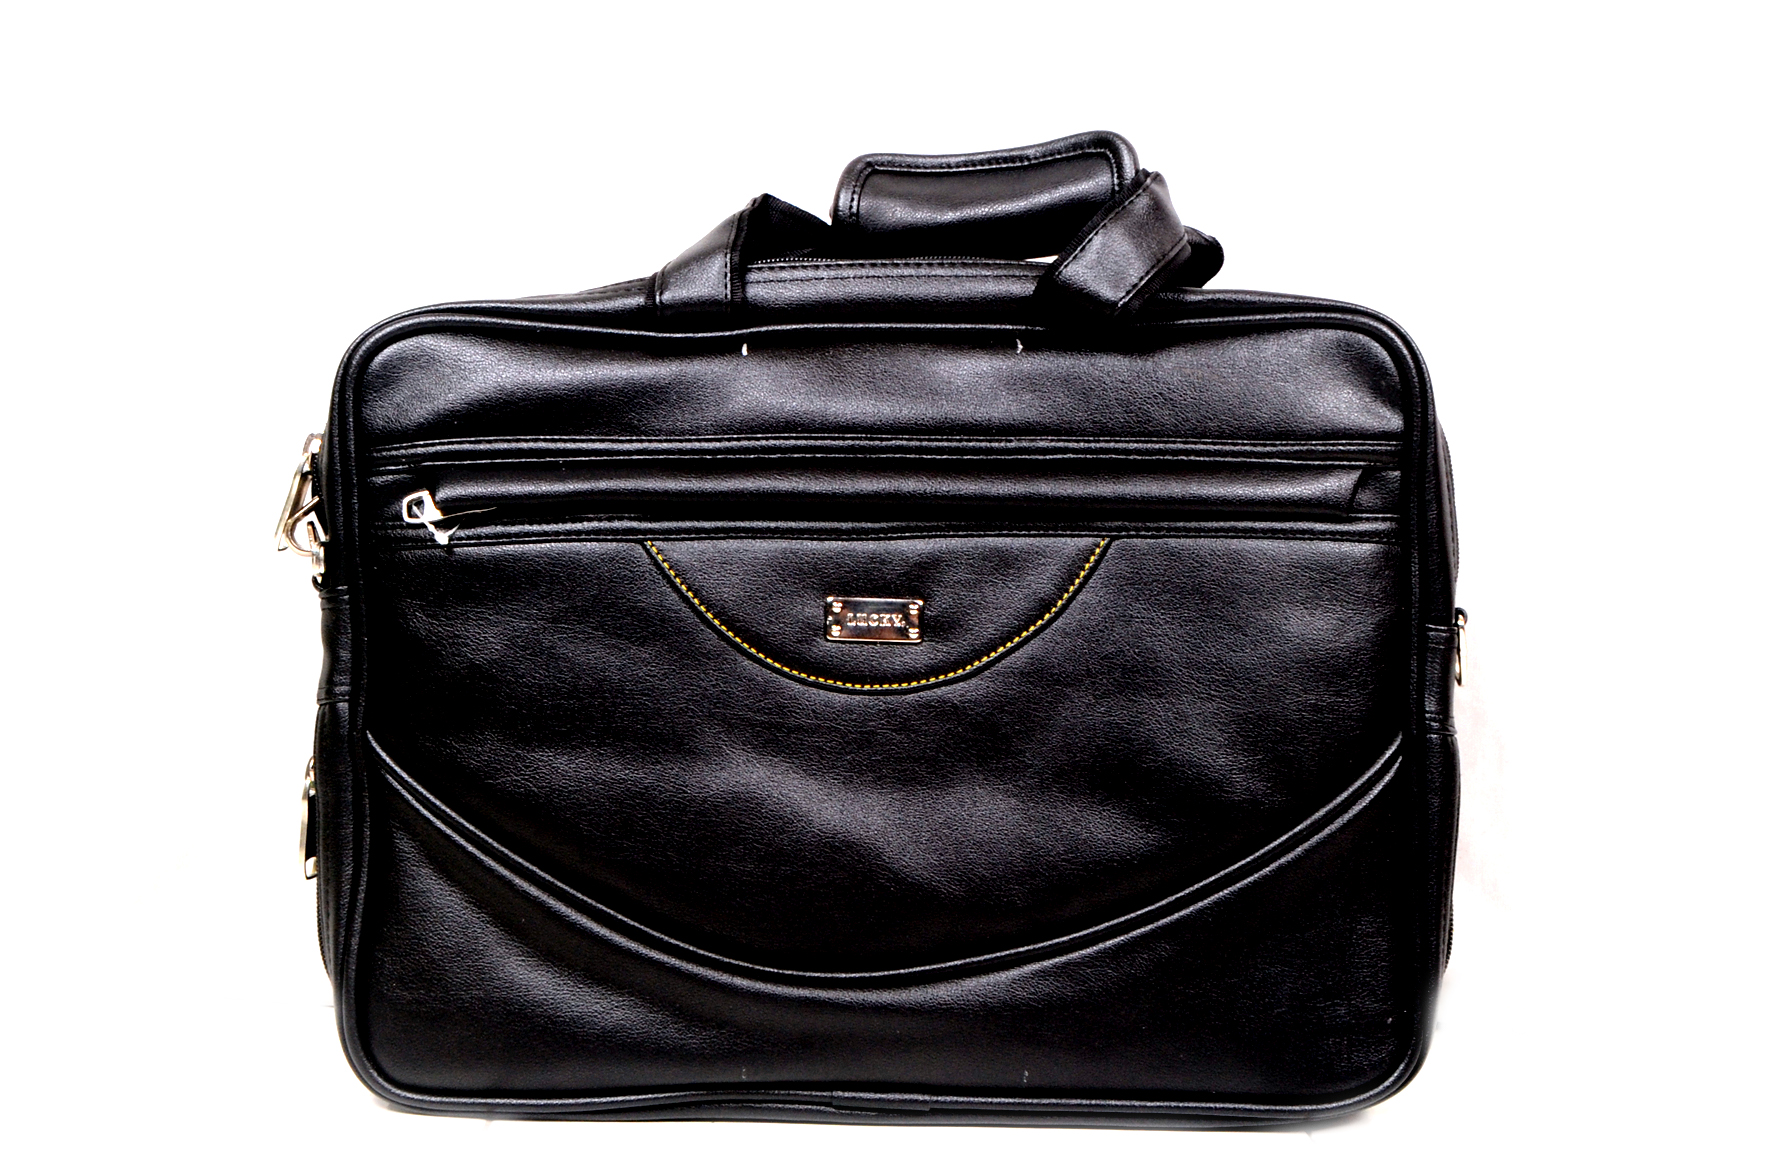 Buy Black Shoulder Bag Online at Best Price at Global Desi- 8905134975052